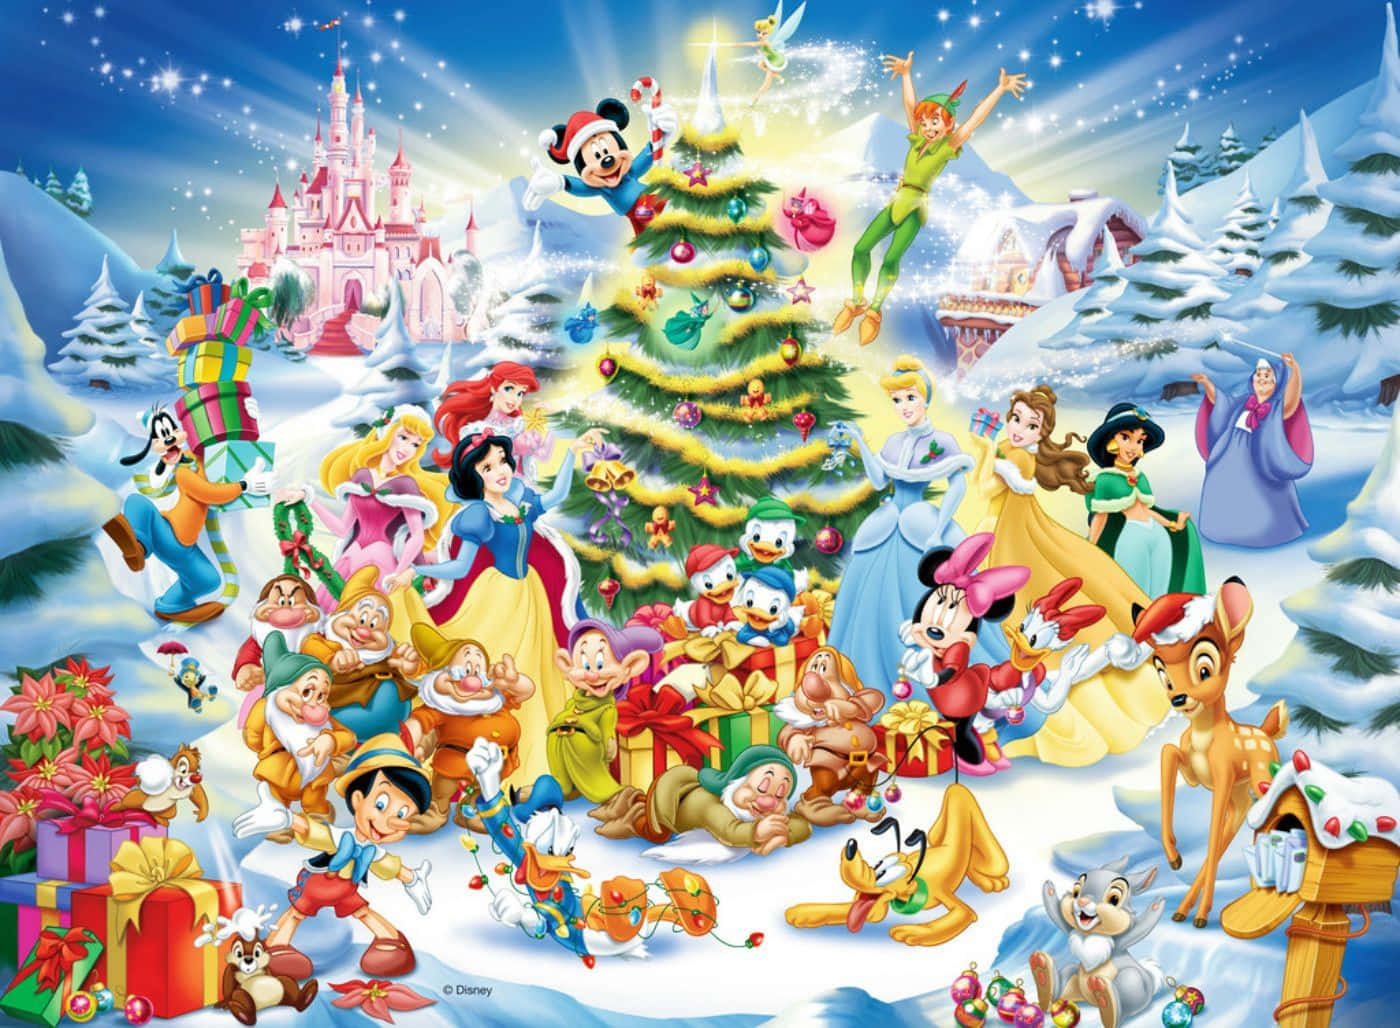 Tag magien fra Disney jul overalt hvor du går med denne iPad. Wallpaper